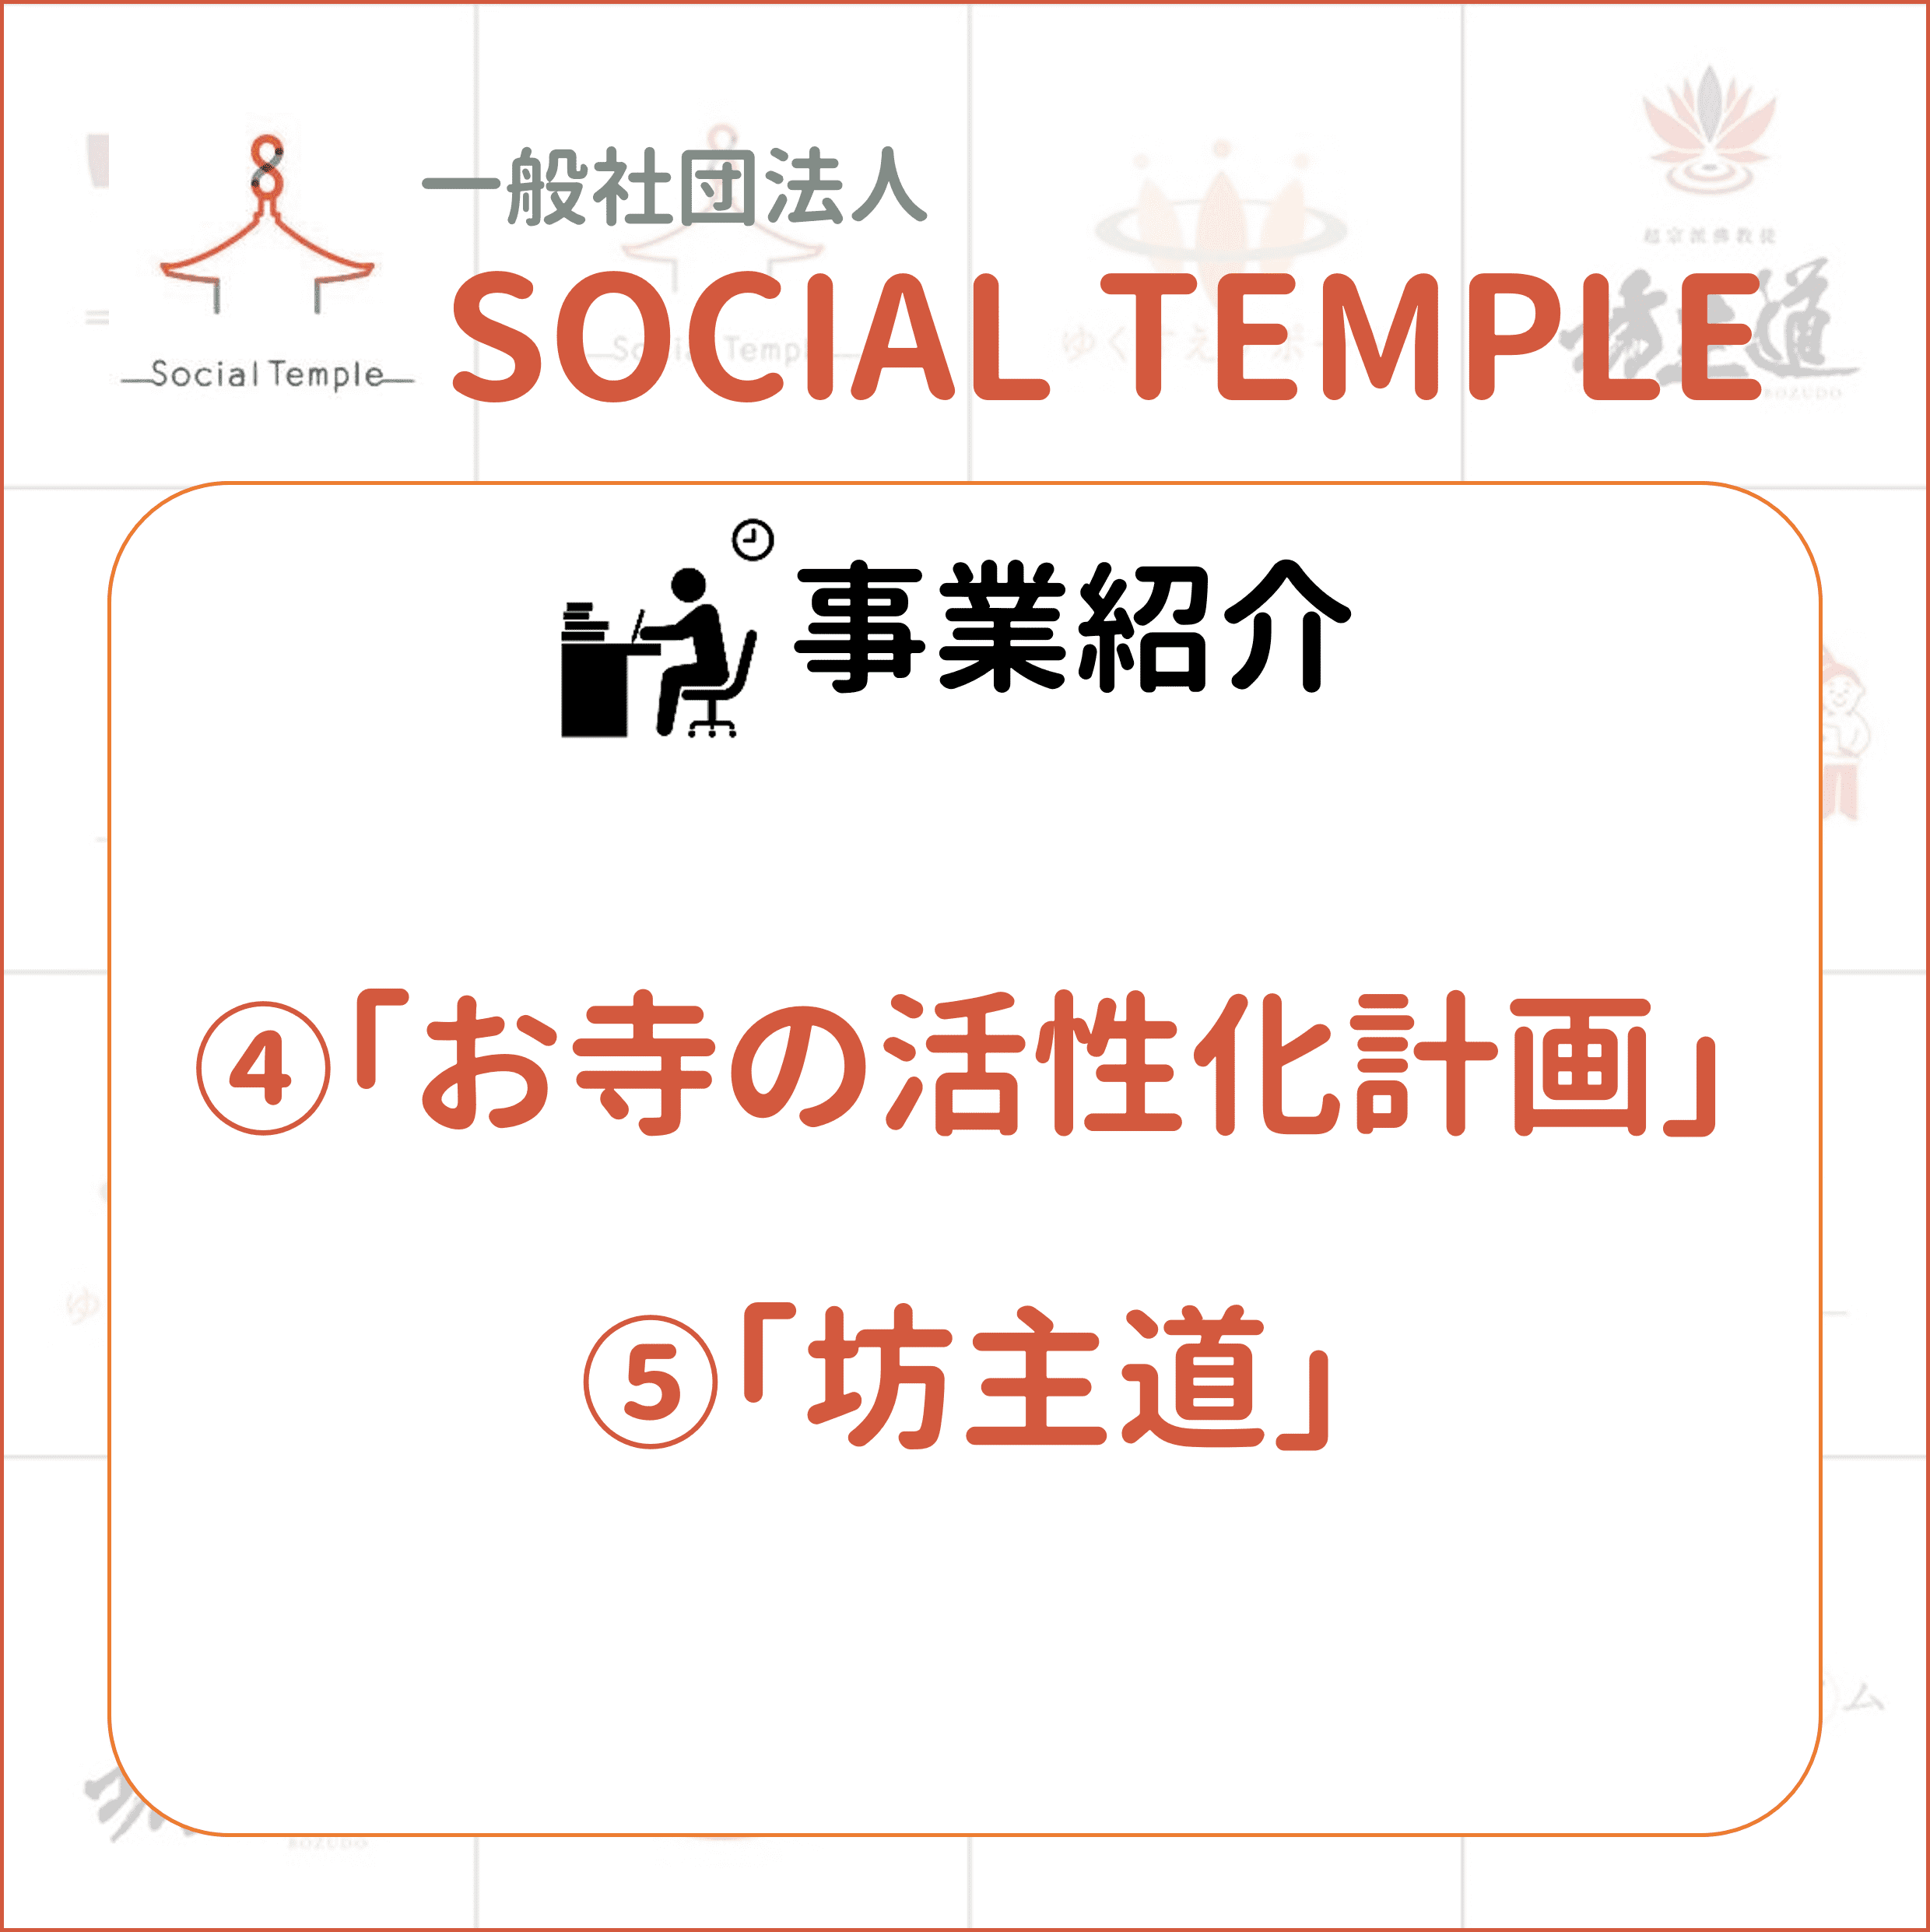 一般社団法人ソーシャルテンプルのプロジェクトとして、お寺の活性化計画と坊主道があります